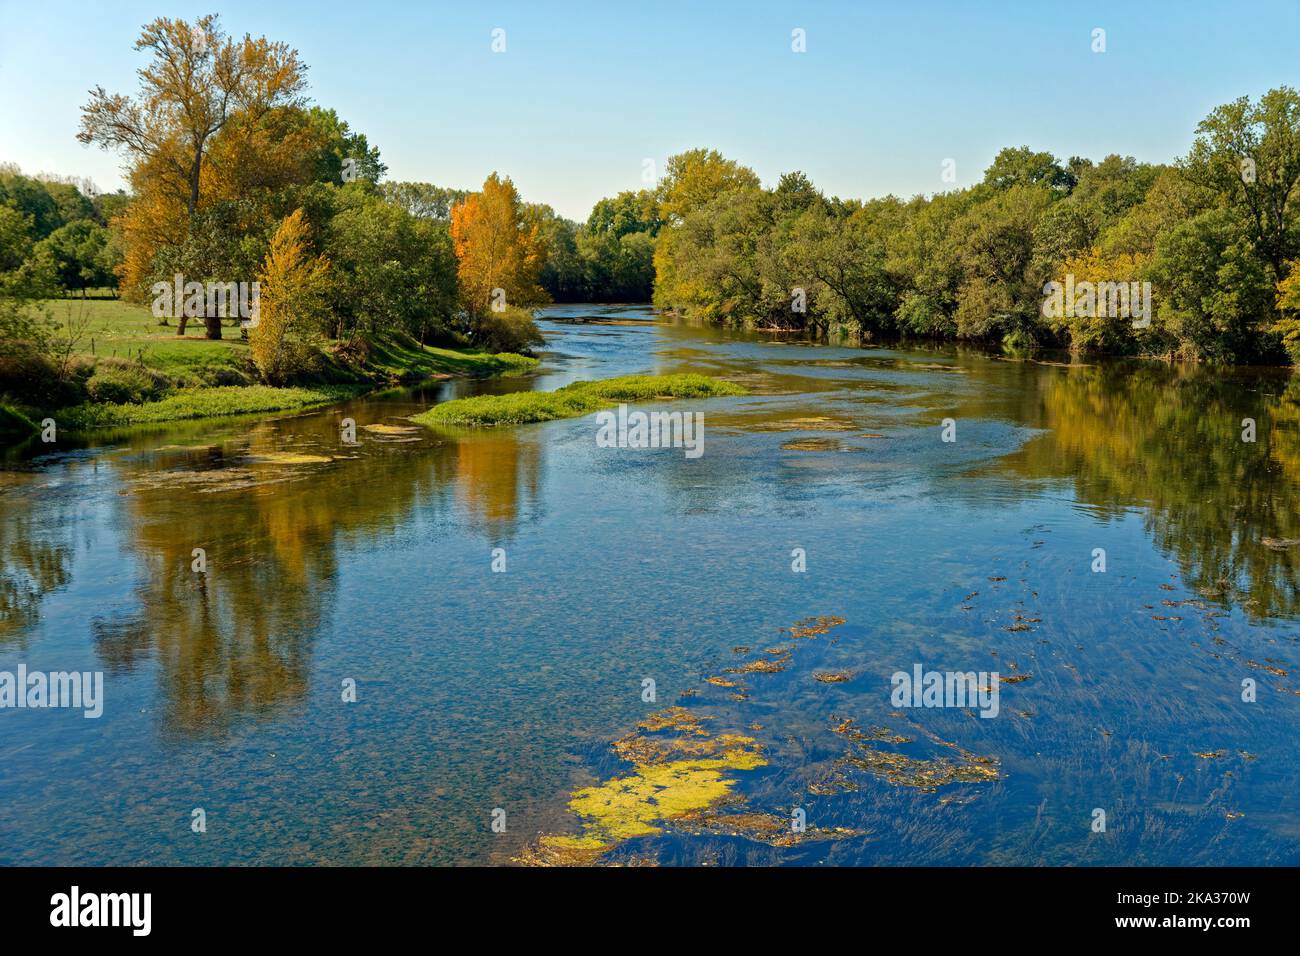 El río Cher entre Villefranche-sur-Cher y Saint-Julien-sur-Cher, en el departamento de Loire-et-Cher en el centro de Francia. Foto de stock